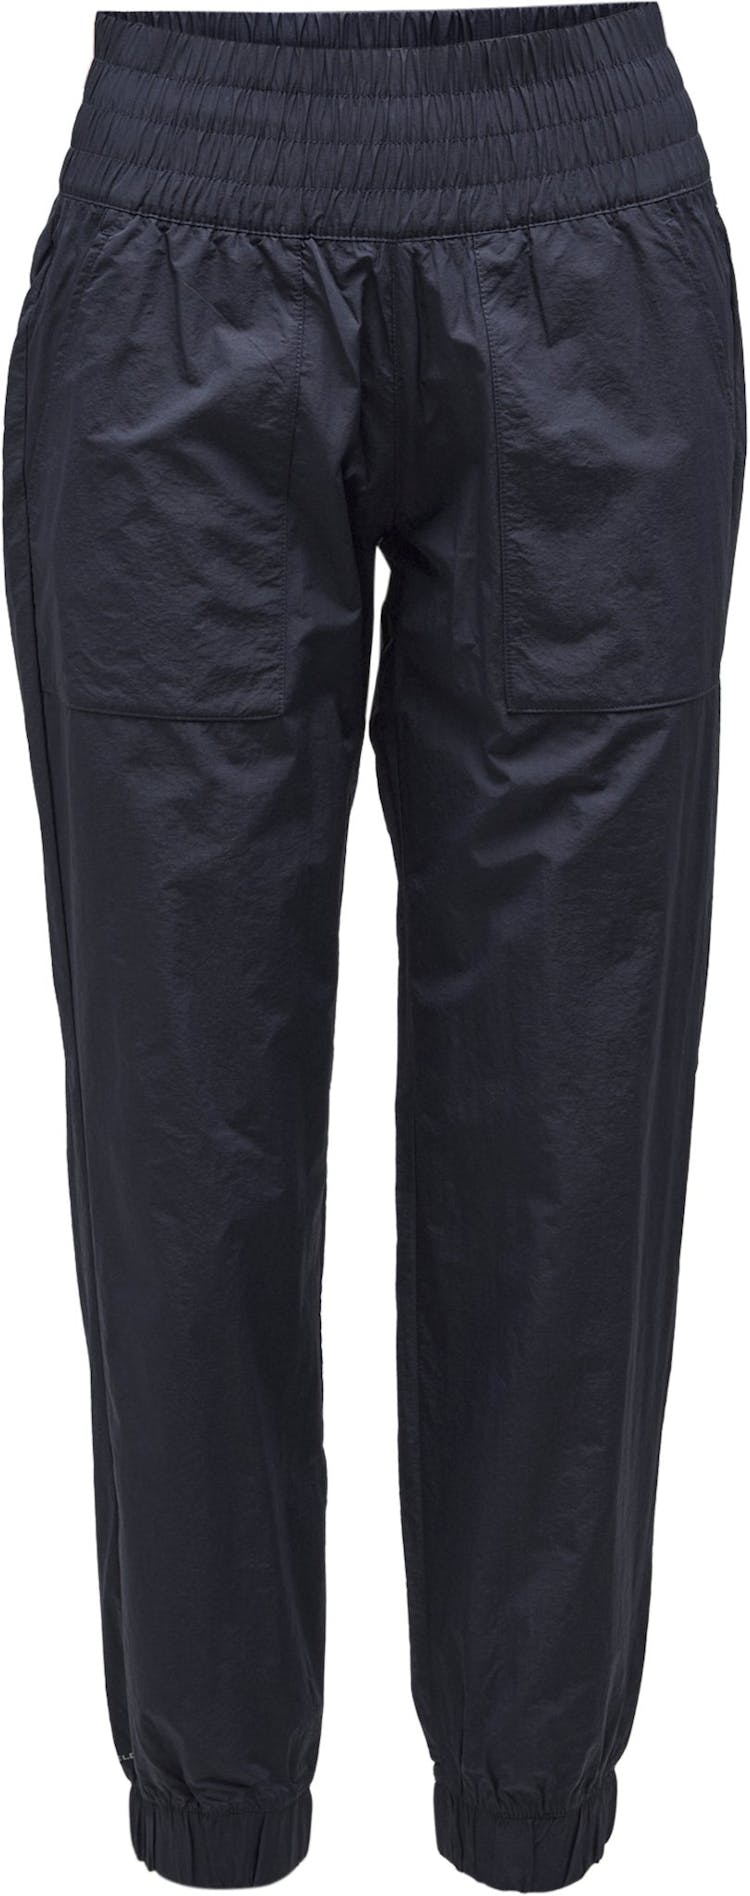 Numéro de l'image de la galerie de produits 1 pour le produit Pantalon de jogging Boundless Trek - Femme